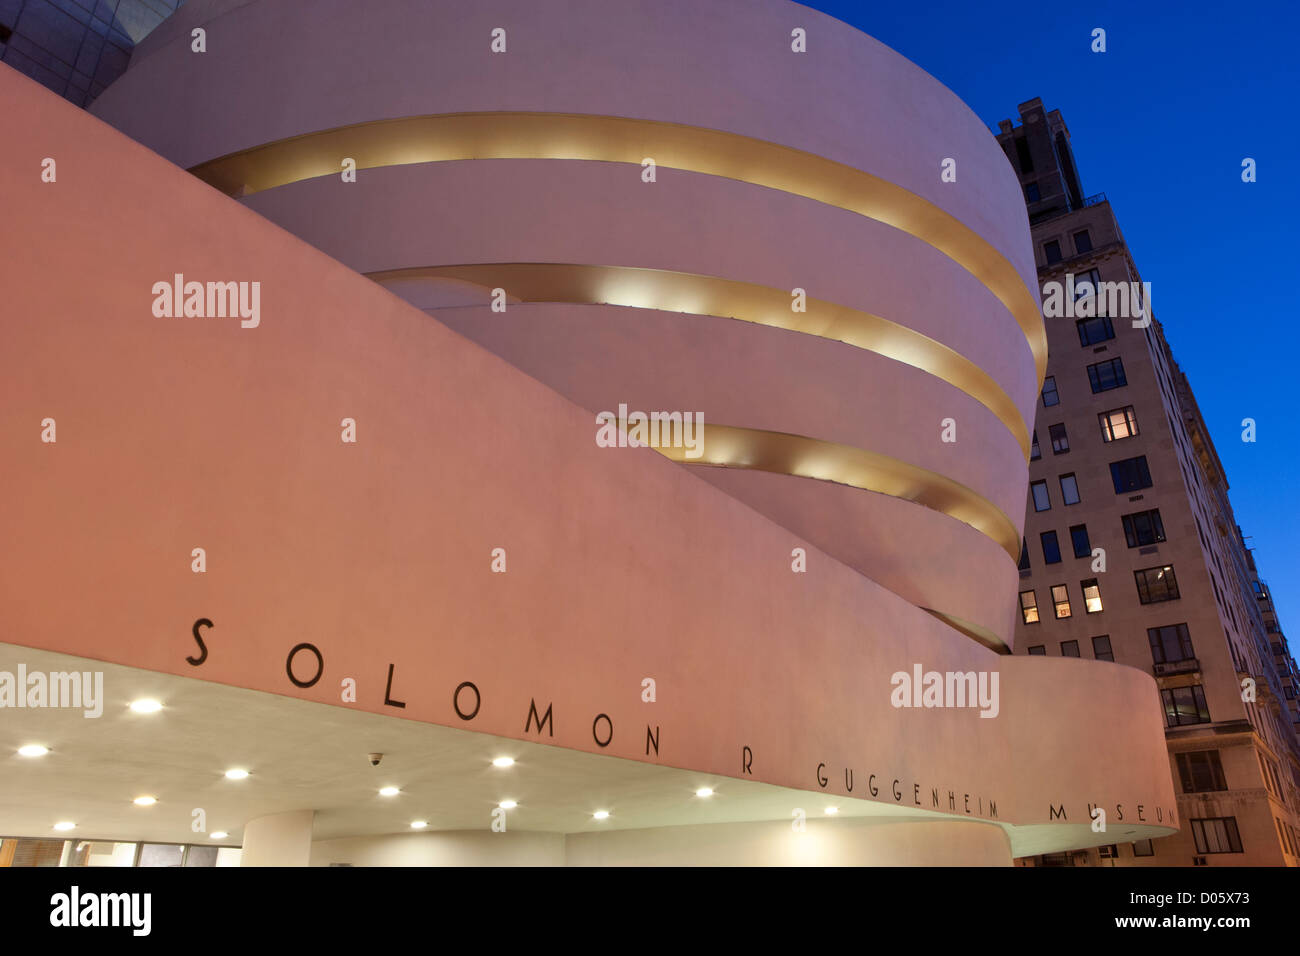 The Solomon R. Guggenheim Museum, New York, USA Stock Photo